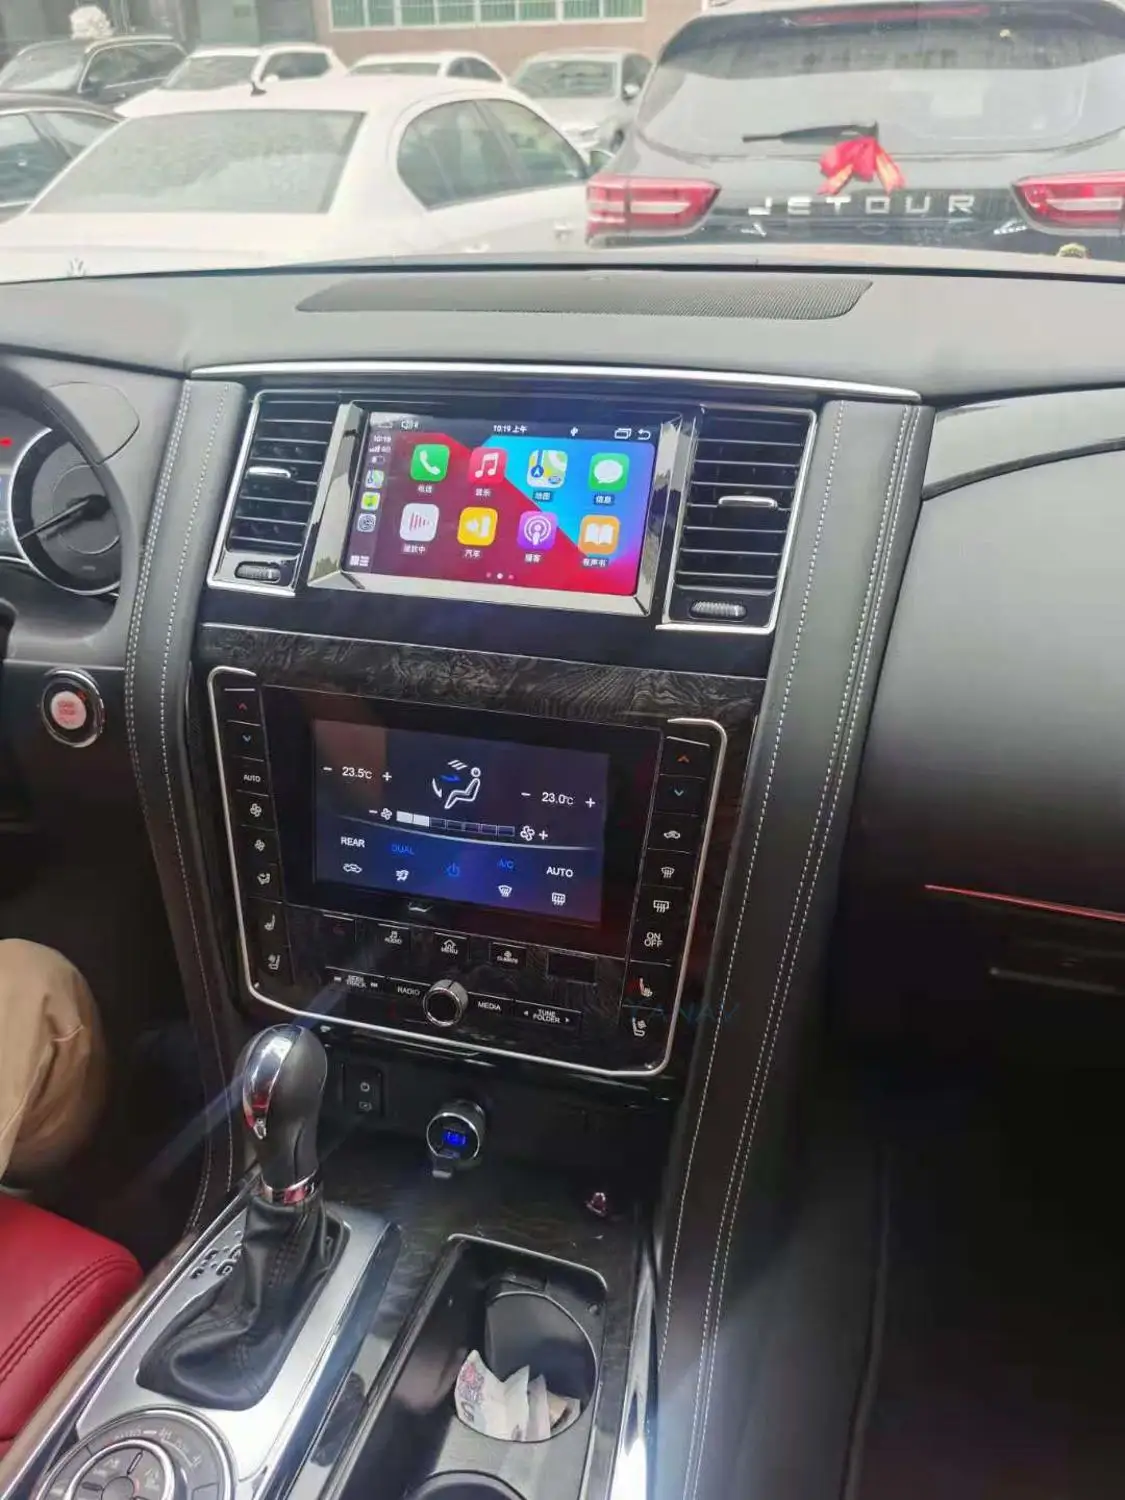 Auto rádio audio 2 din Android prijímač pre Nissan patrol Y62 2012-2019 auto multimediálny prehrávač GPS navi Upravené tak, aby v roku 2020 nové Video